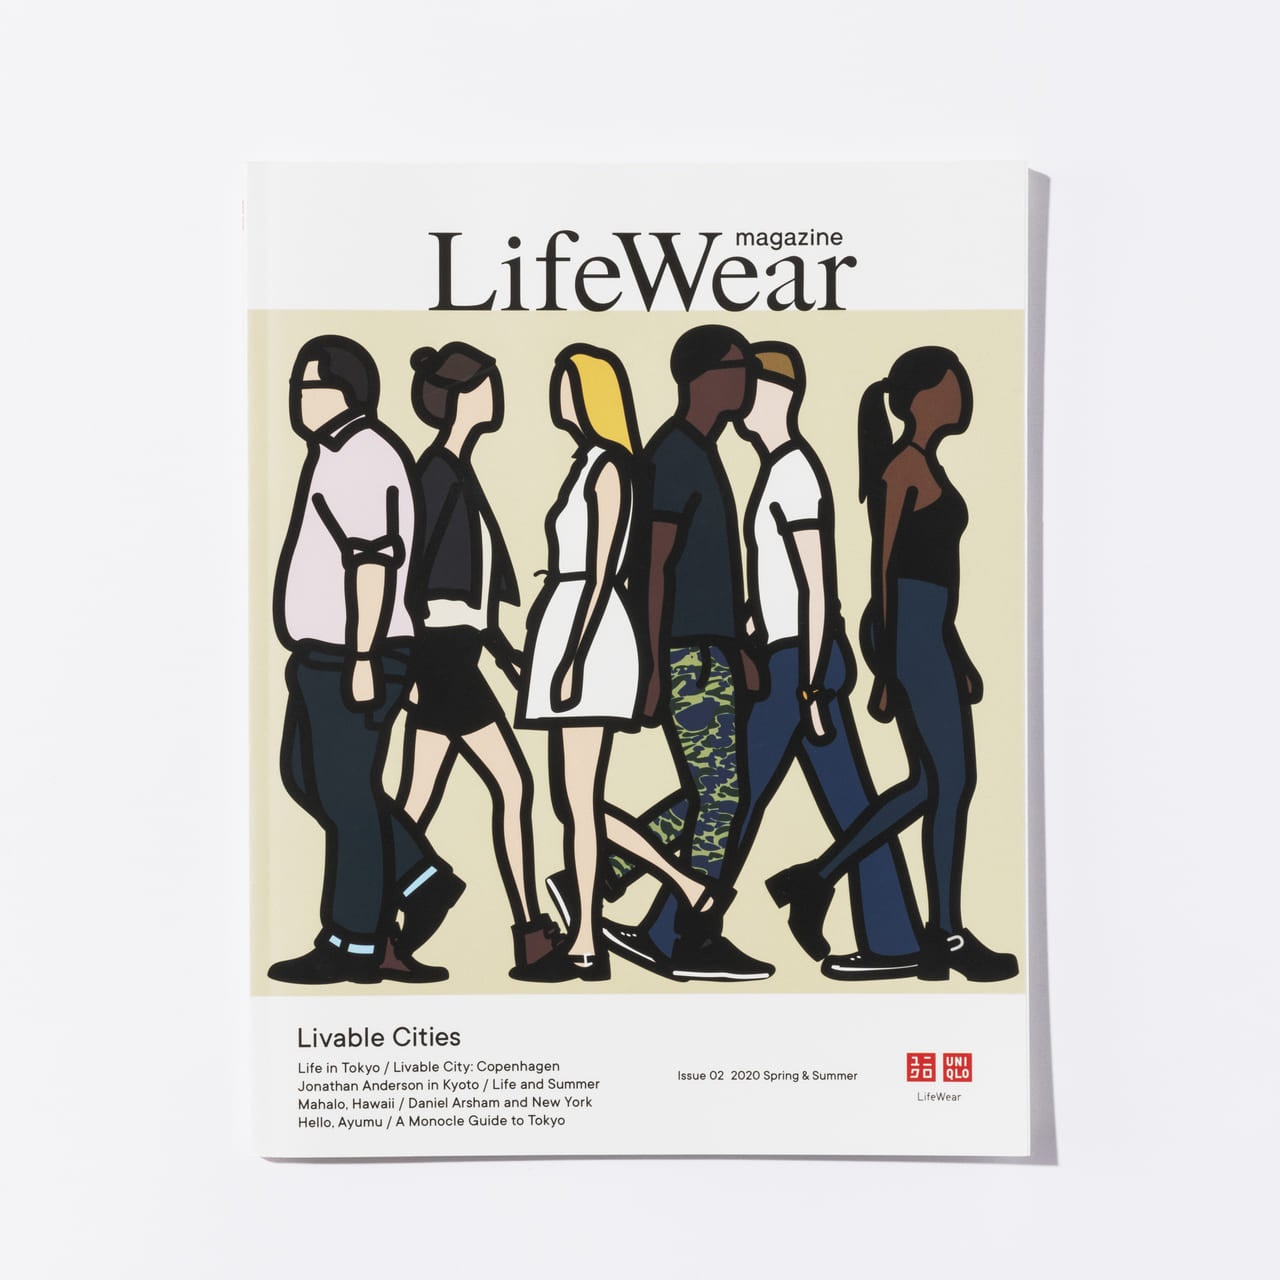 ユニクロが掲げるコンセプト「LifeWear」を伝える『LifeWear magazine』。第2号